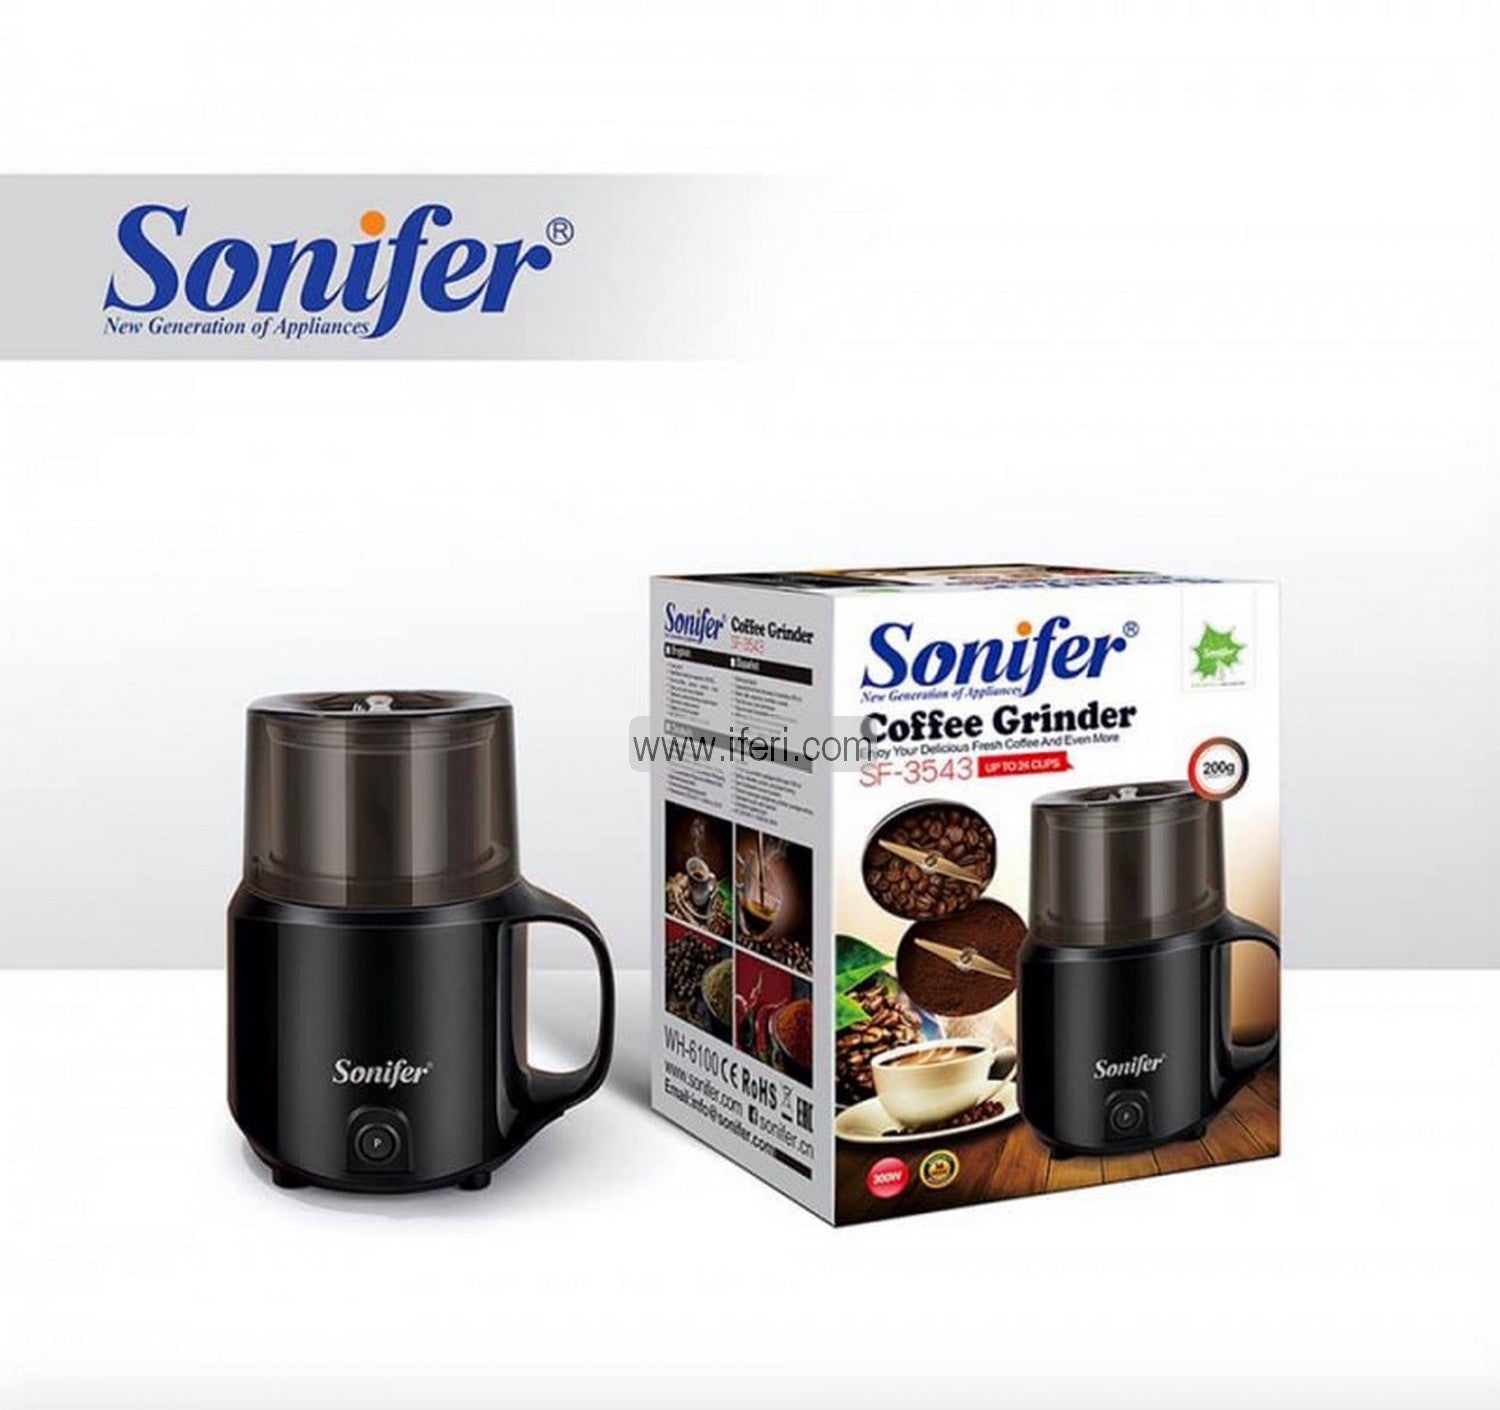 Sonifer 300W Coffee Grinder SF-3543